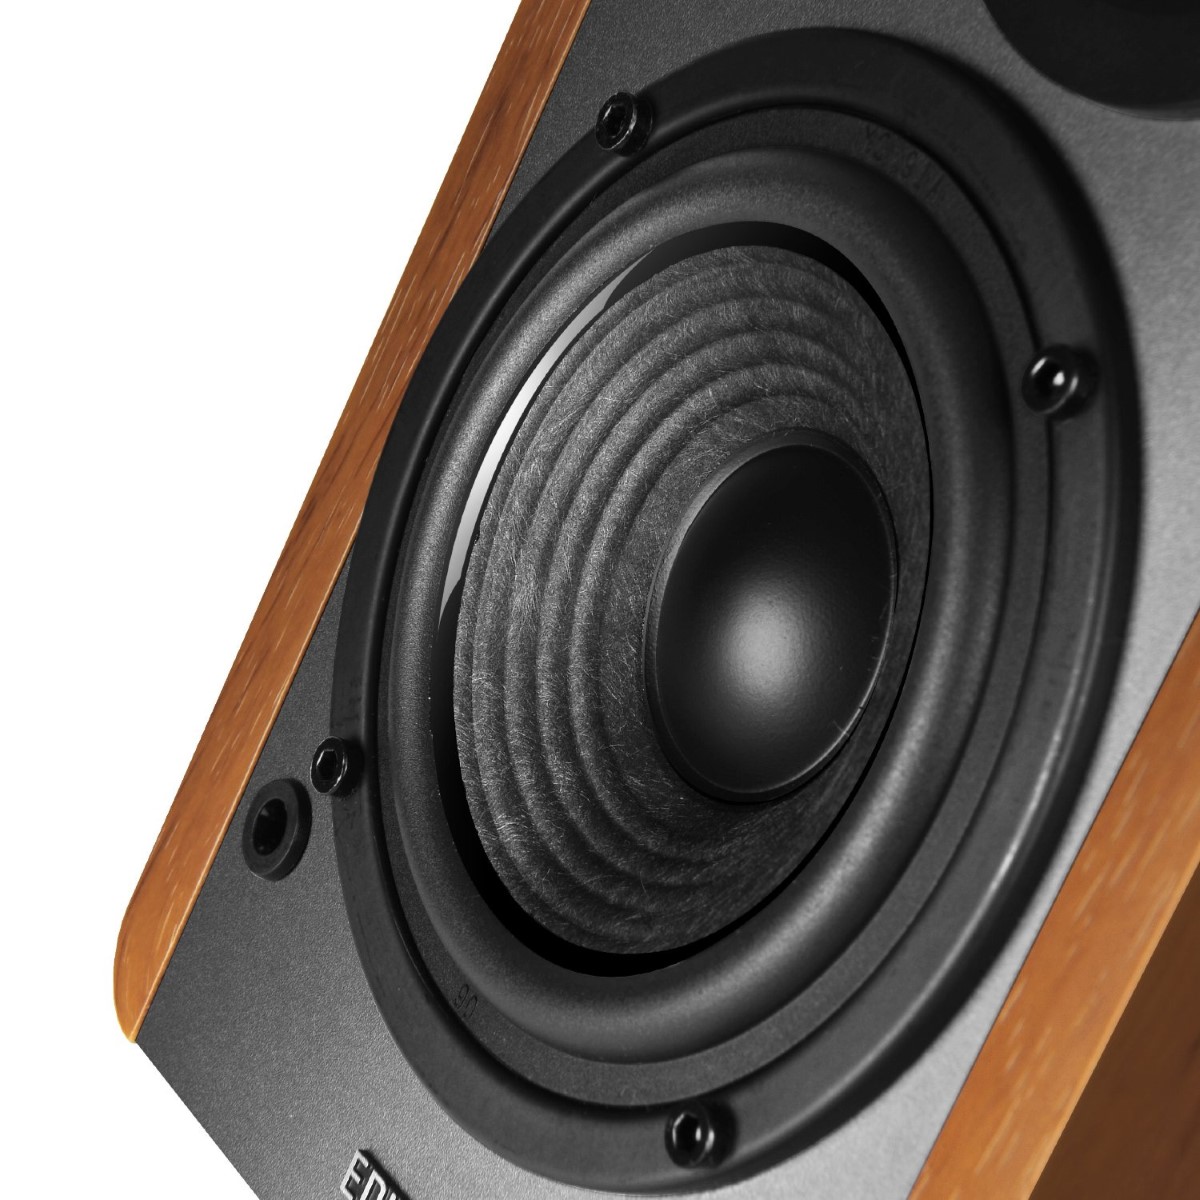 Edifier - Edifier Studio R1280T 2.0 42W RMS Speakers - Maple